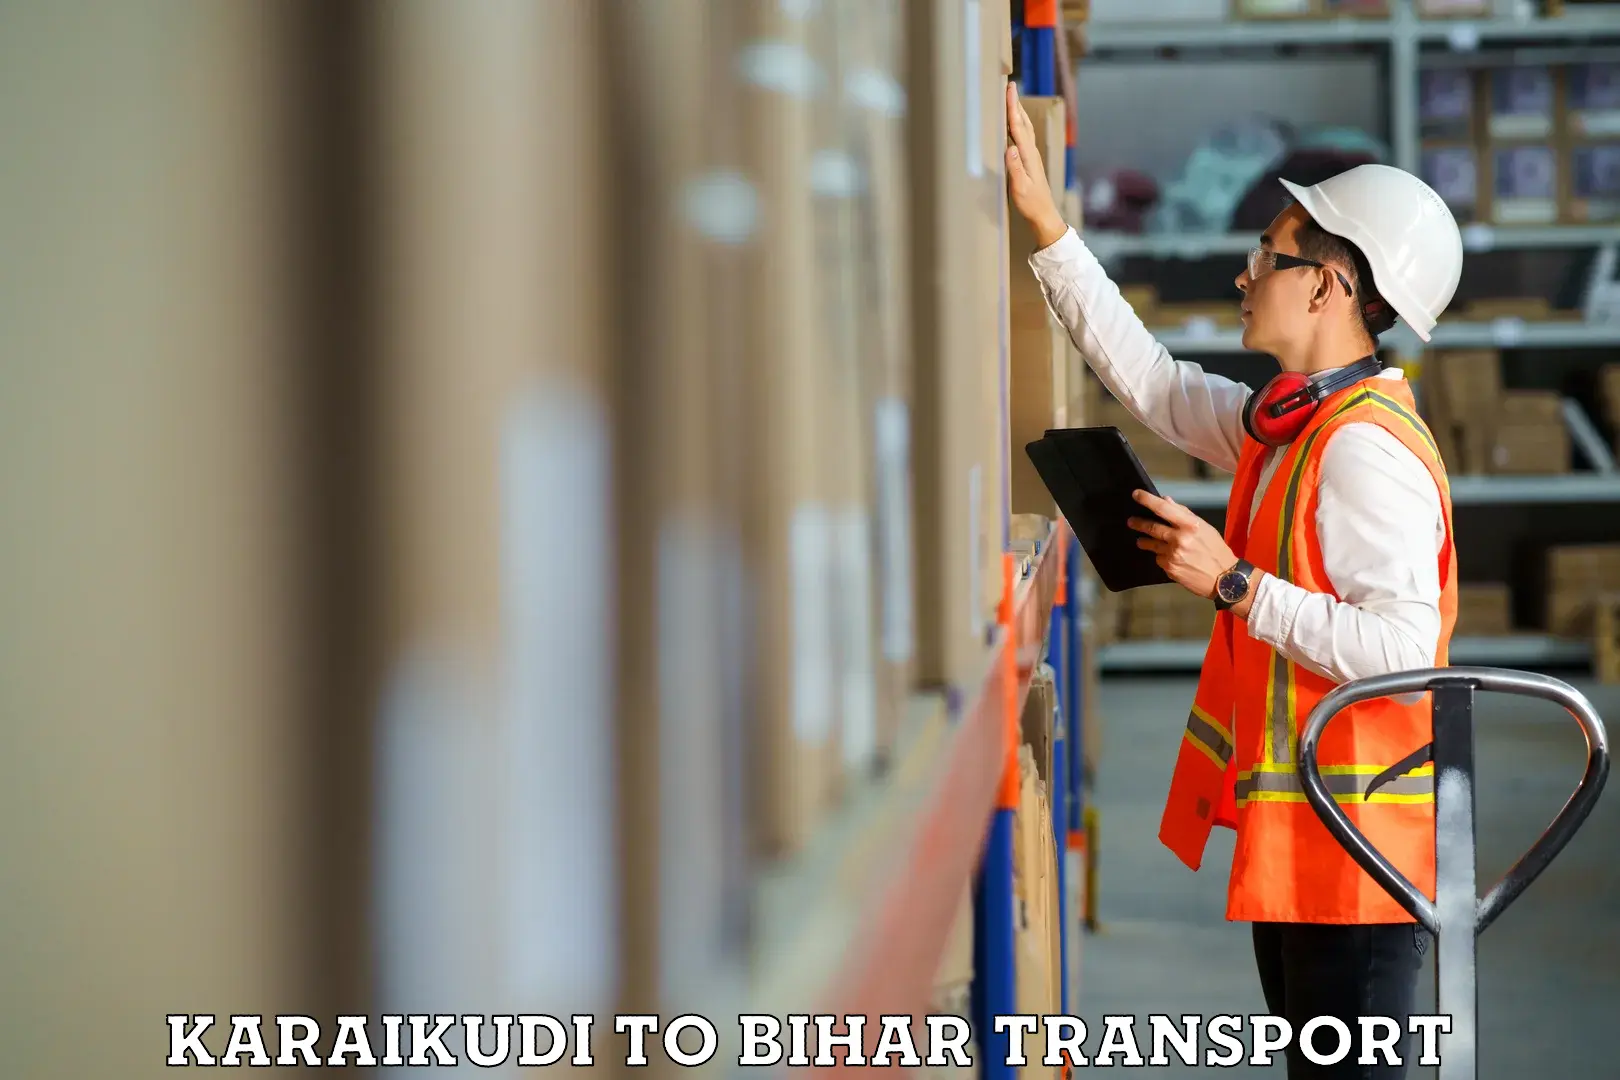 Interstate transport services Karaikudi to Biraul